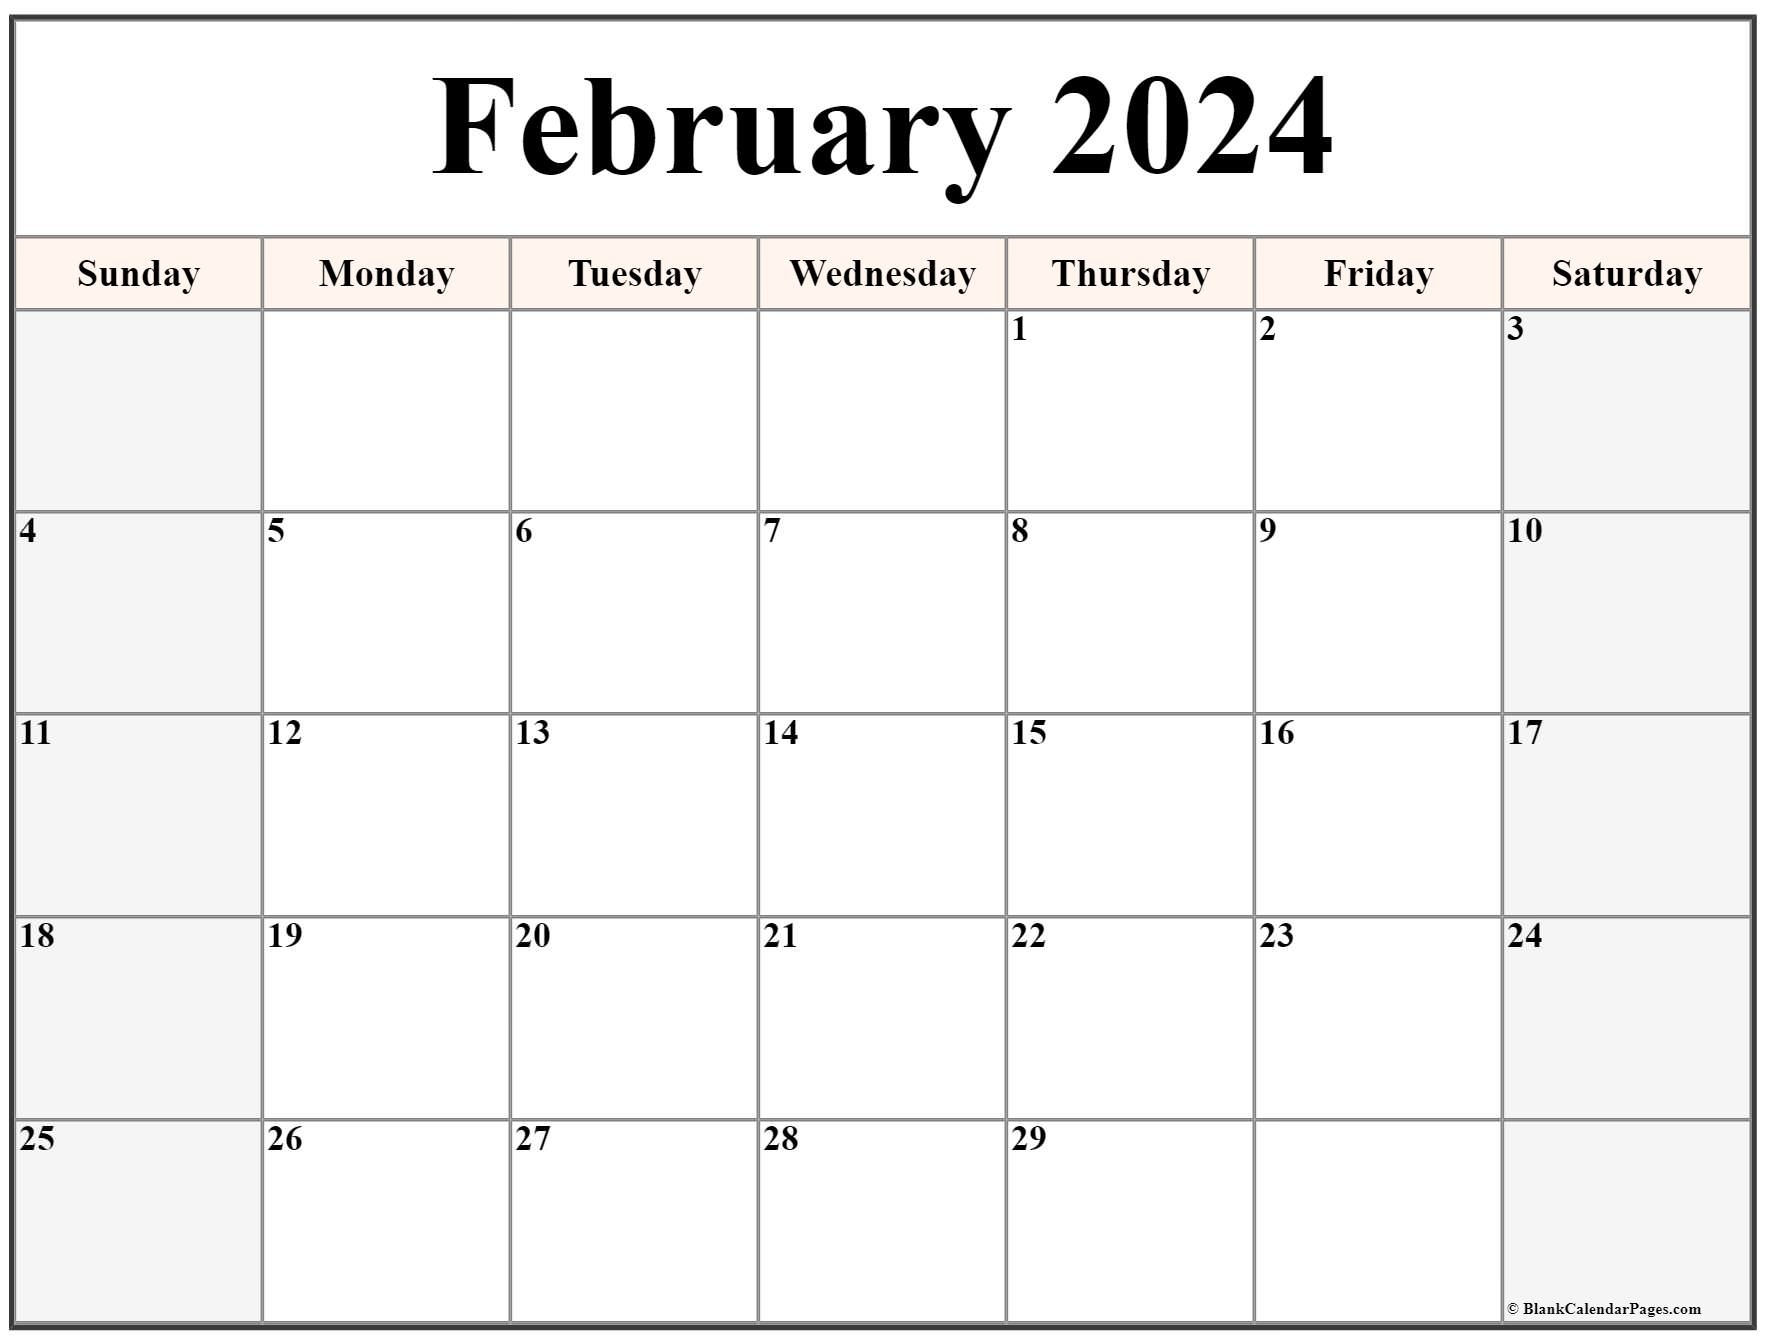 February 2024 Calendar | Free Printable Calendar within Free Printable Calendar 2024-2024